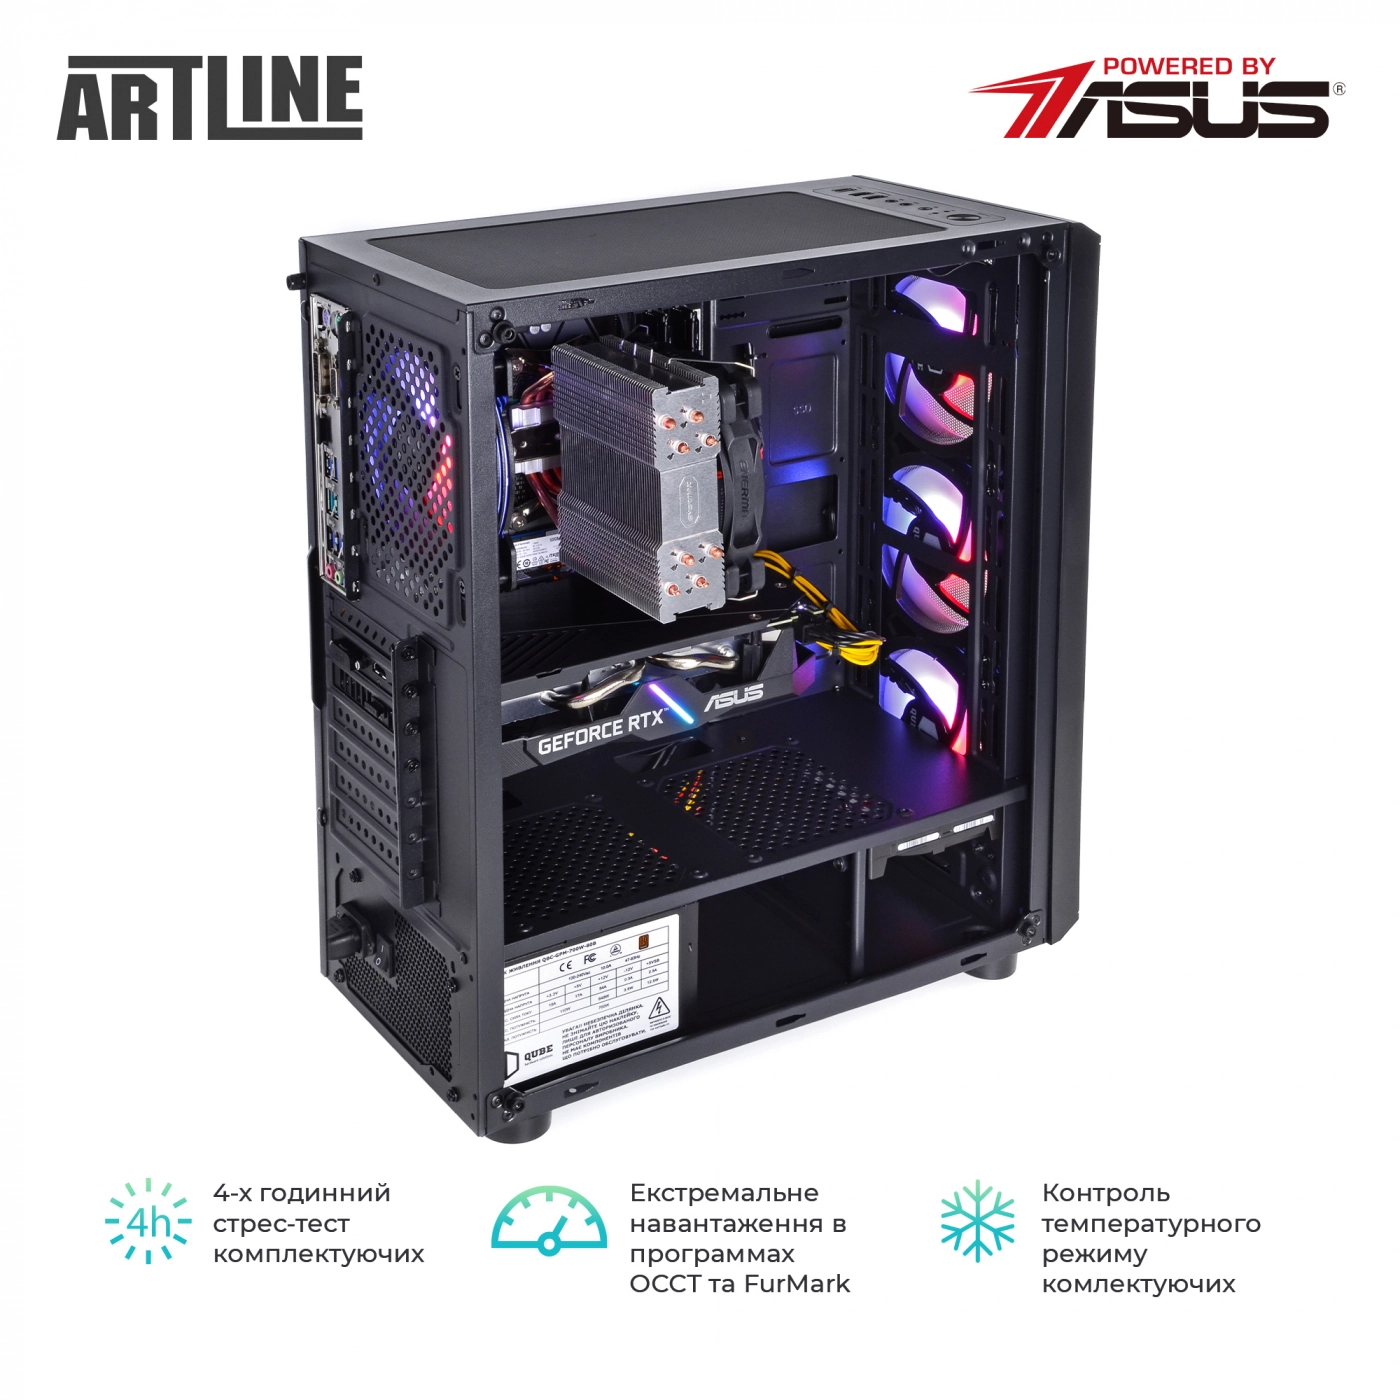 Купить Компьютер ARTLINE Gaming X66v21 - фото 9